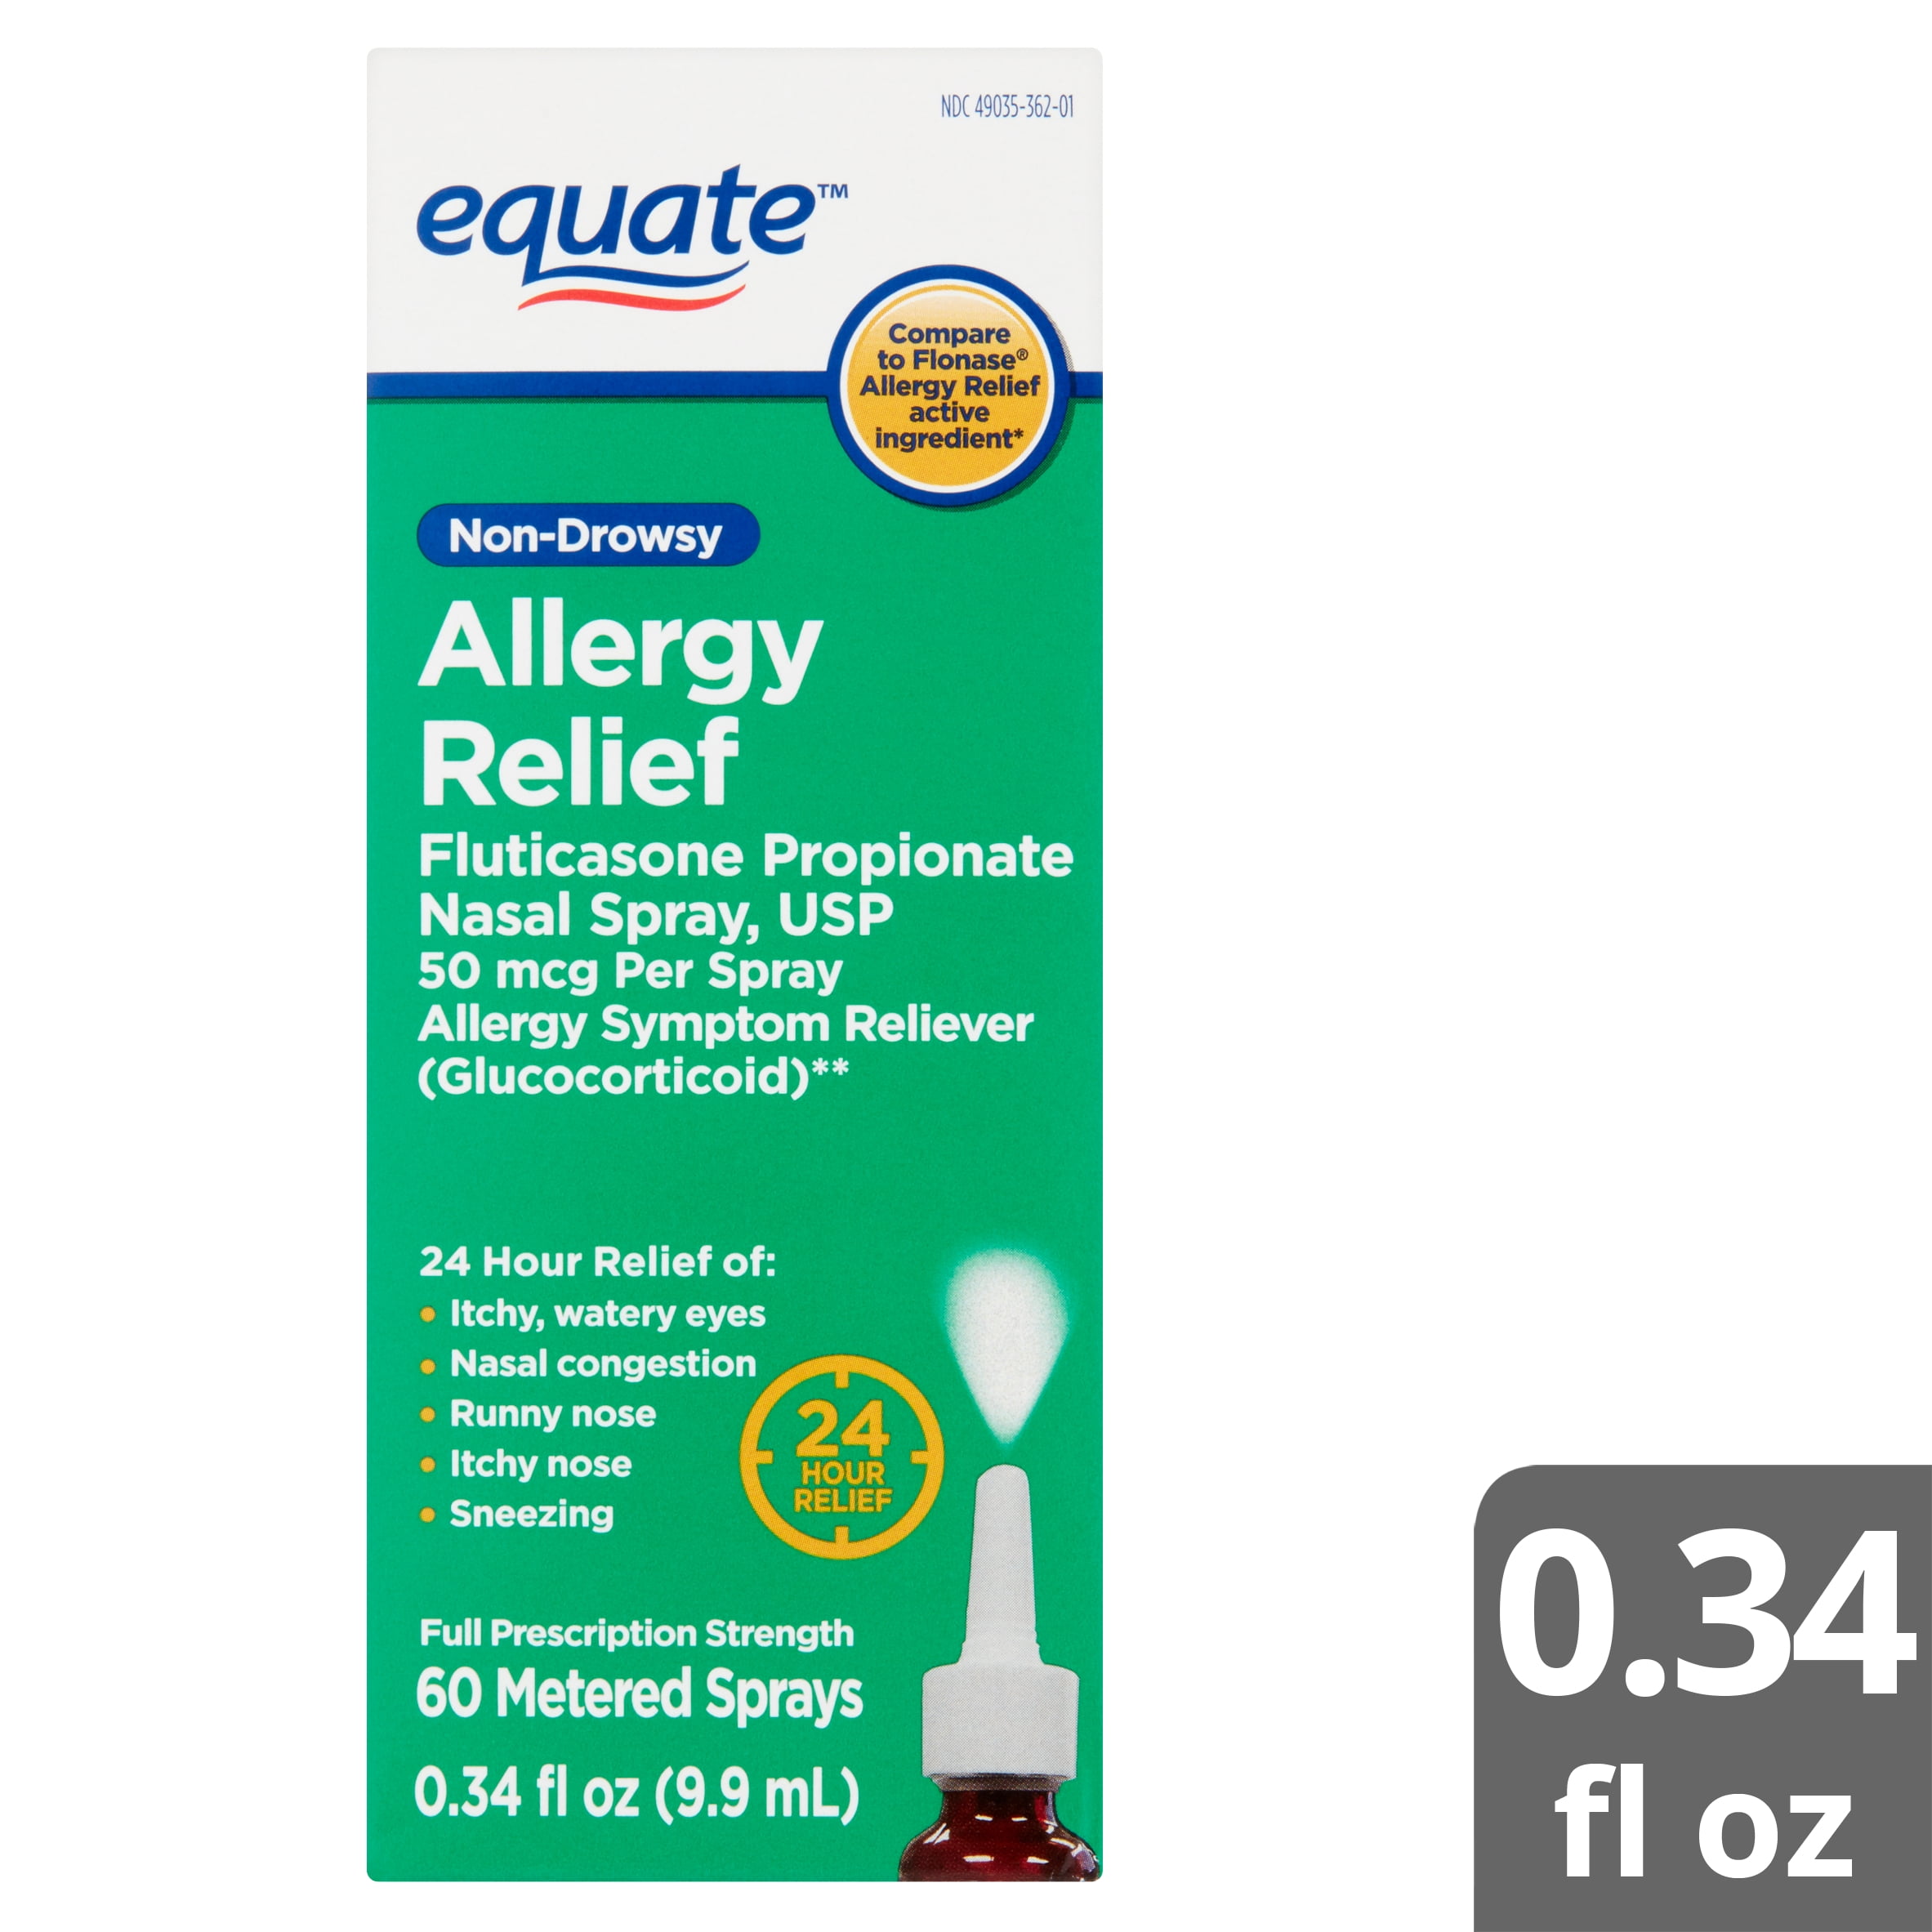 fluticasone propionate nasal spray for allergies